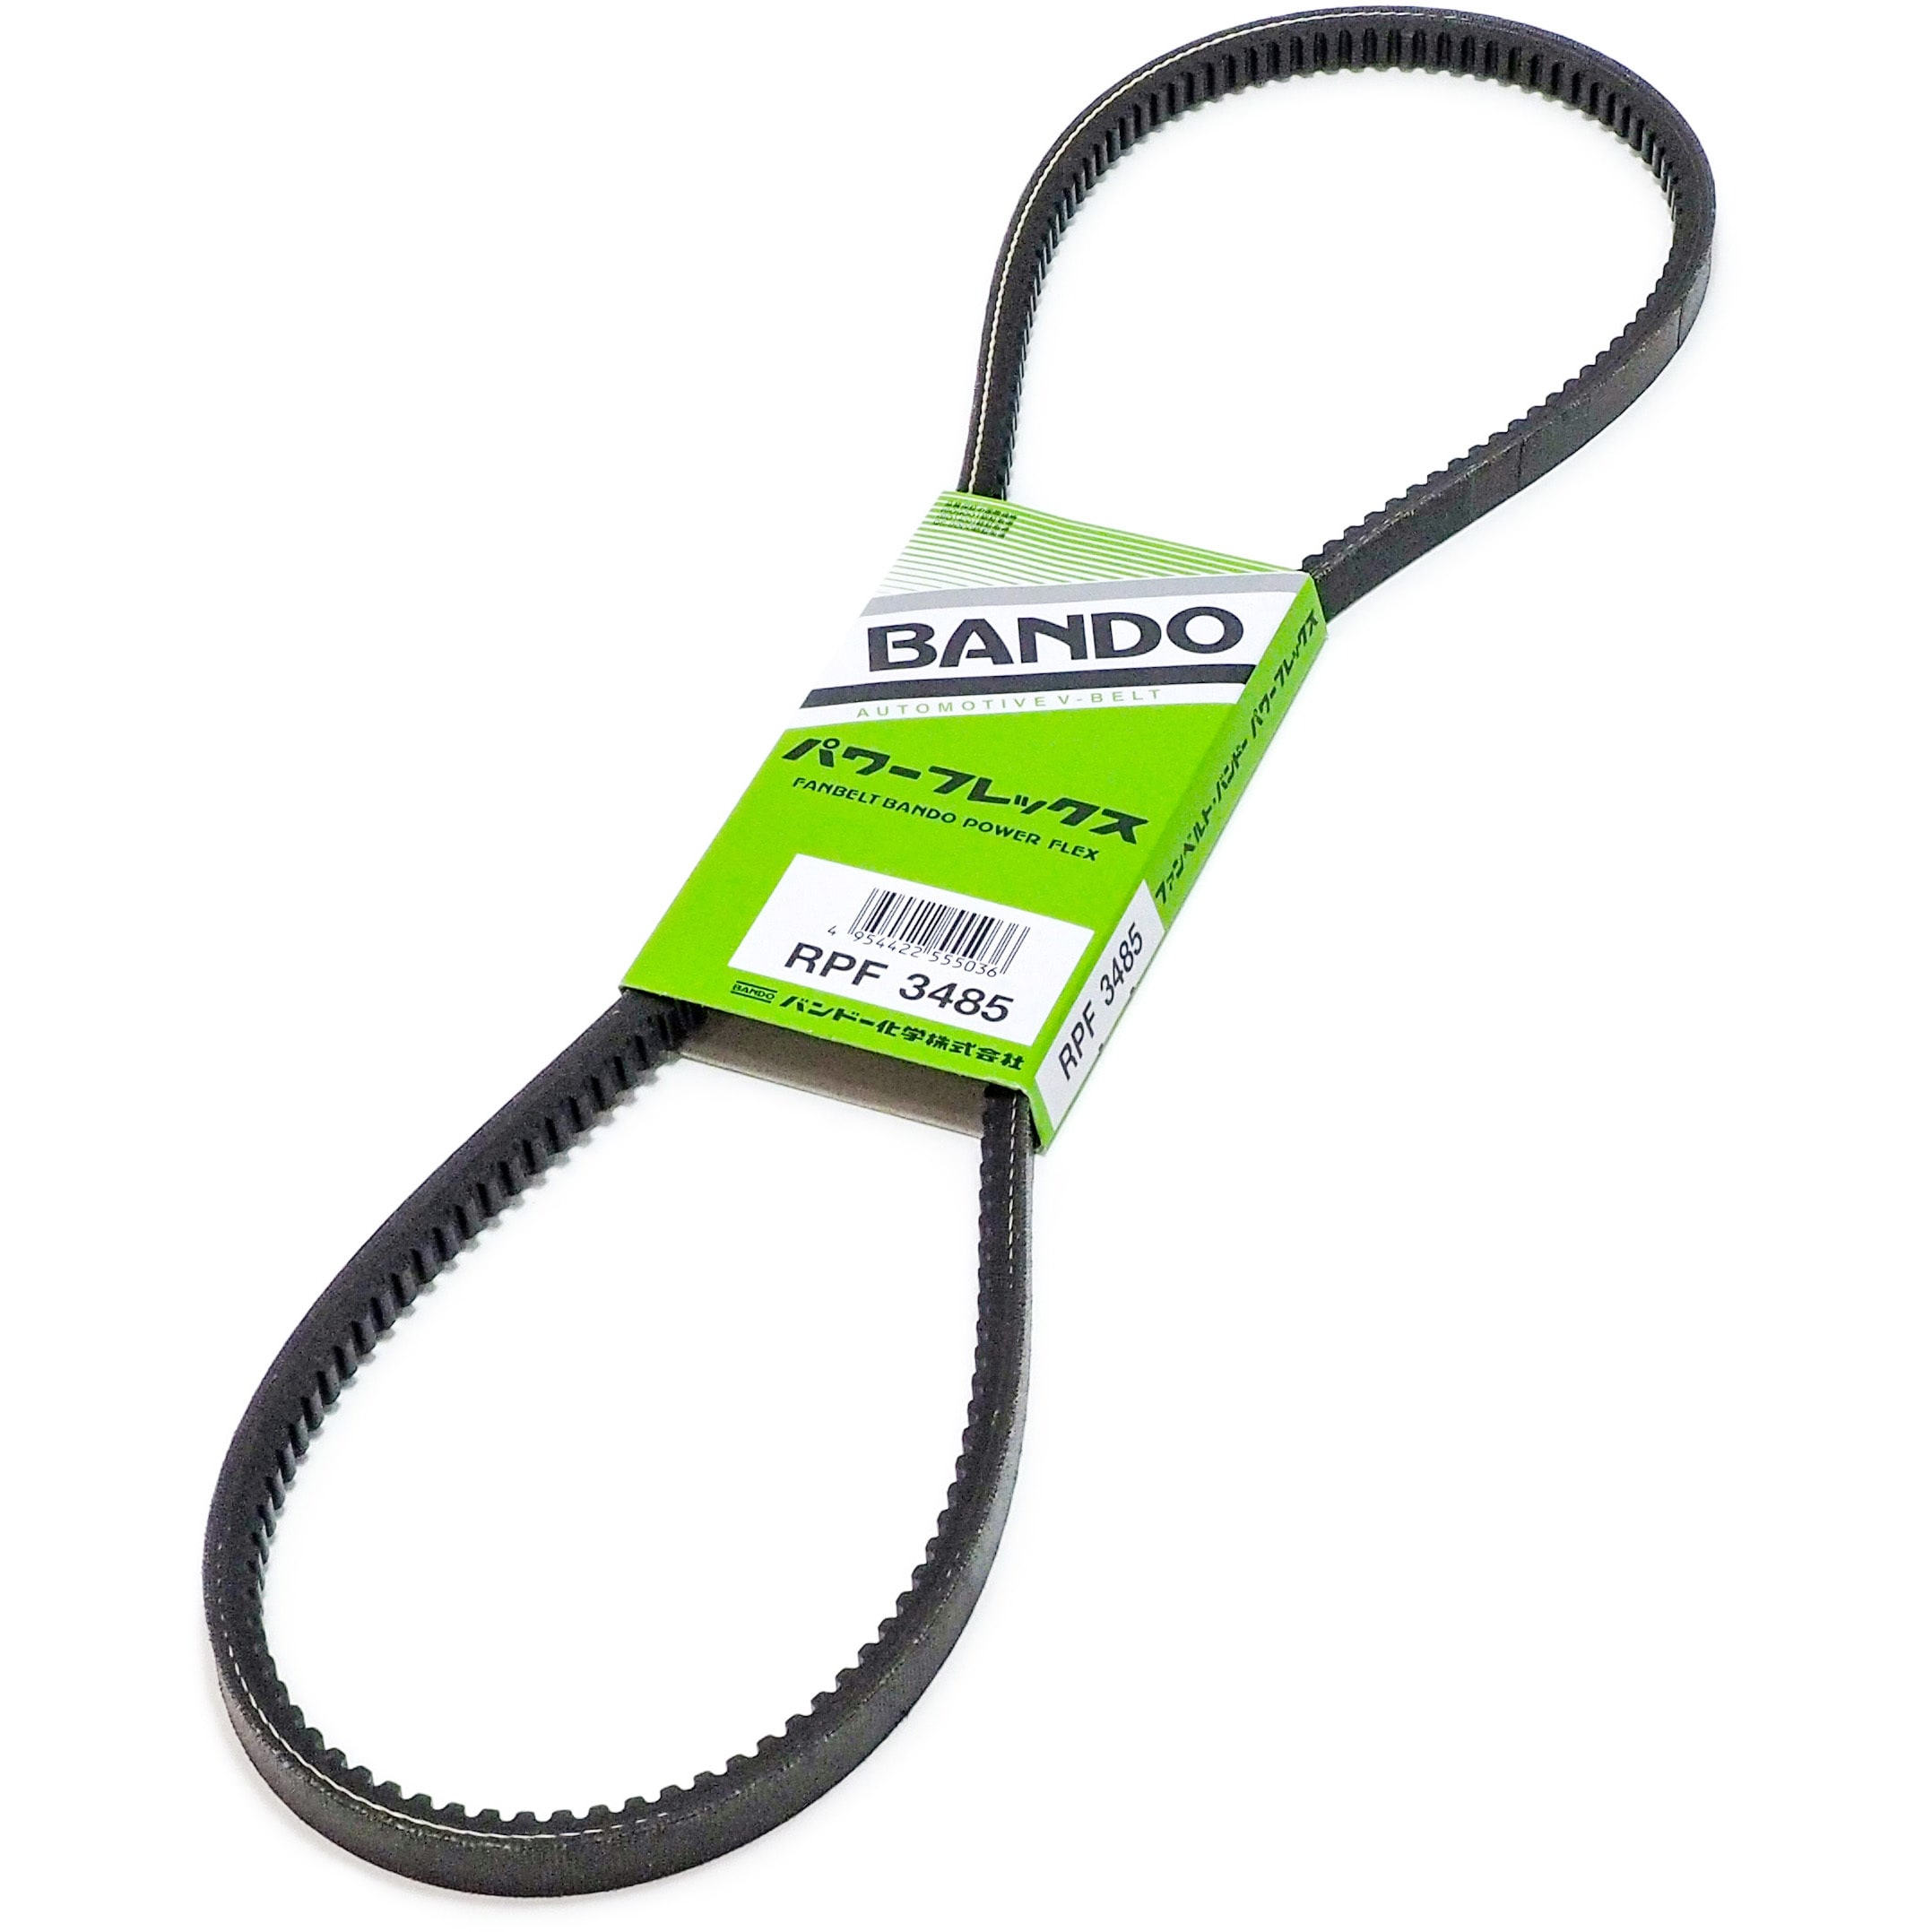  BANDO バンドー化学 ファン用 ベルト 6PK730 ダイハツ ハイゼット S500P バンドー製 ベルト 交換用 メンテナンス